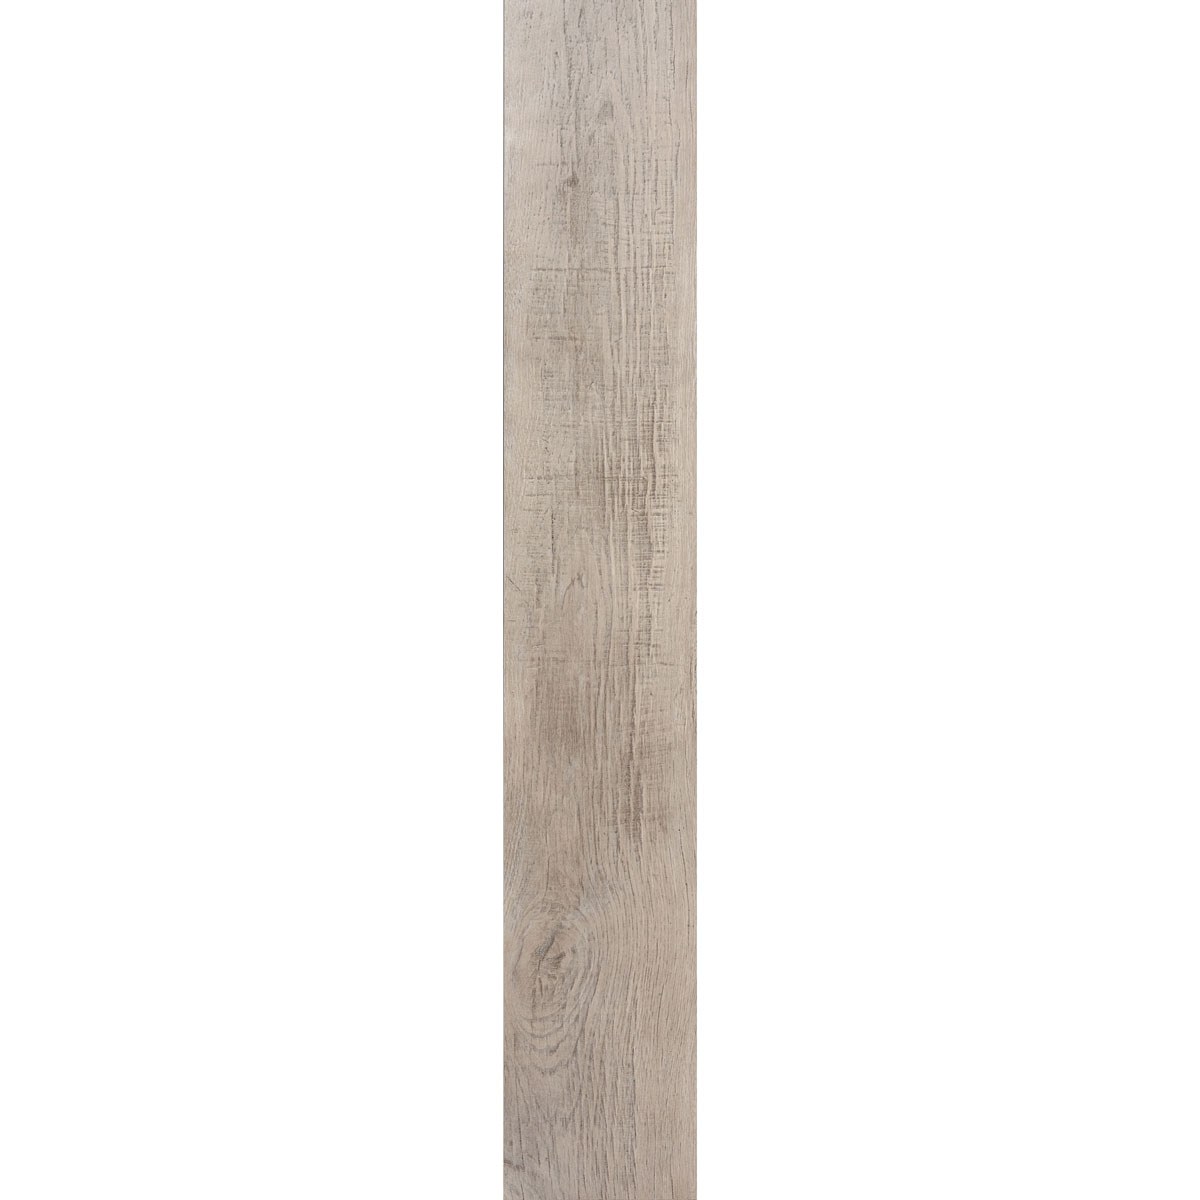 Weathered Oak Honey Plank, product variant image